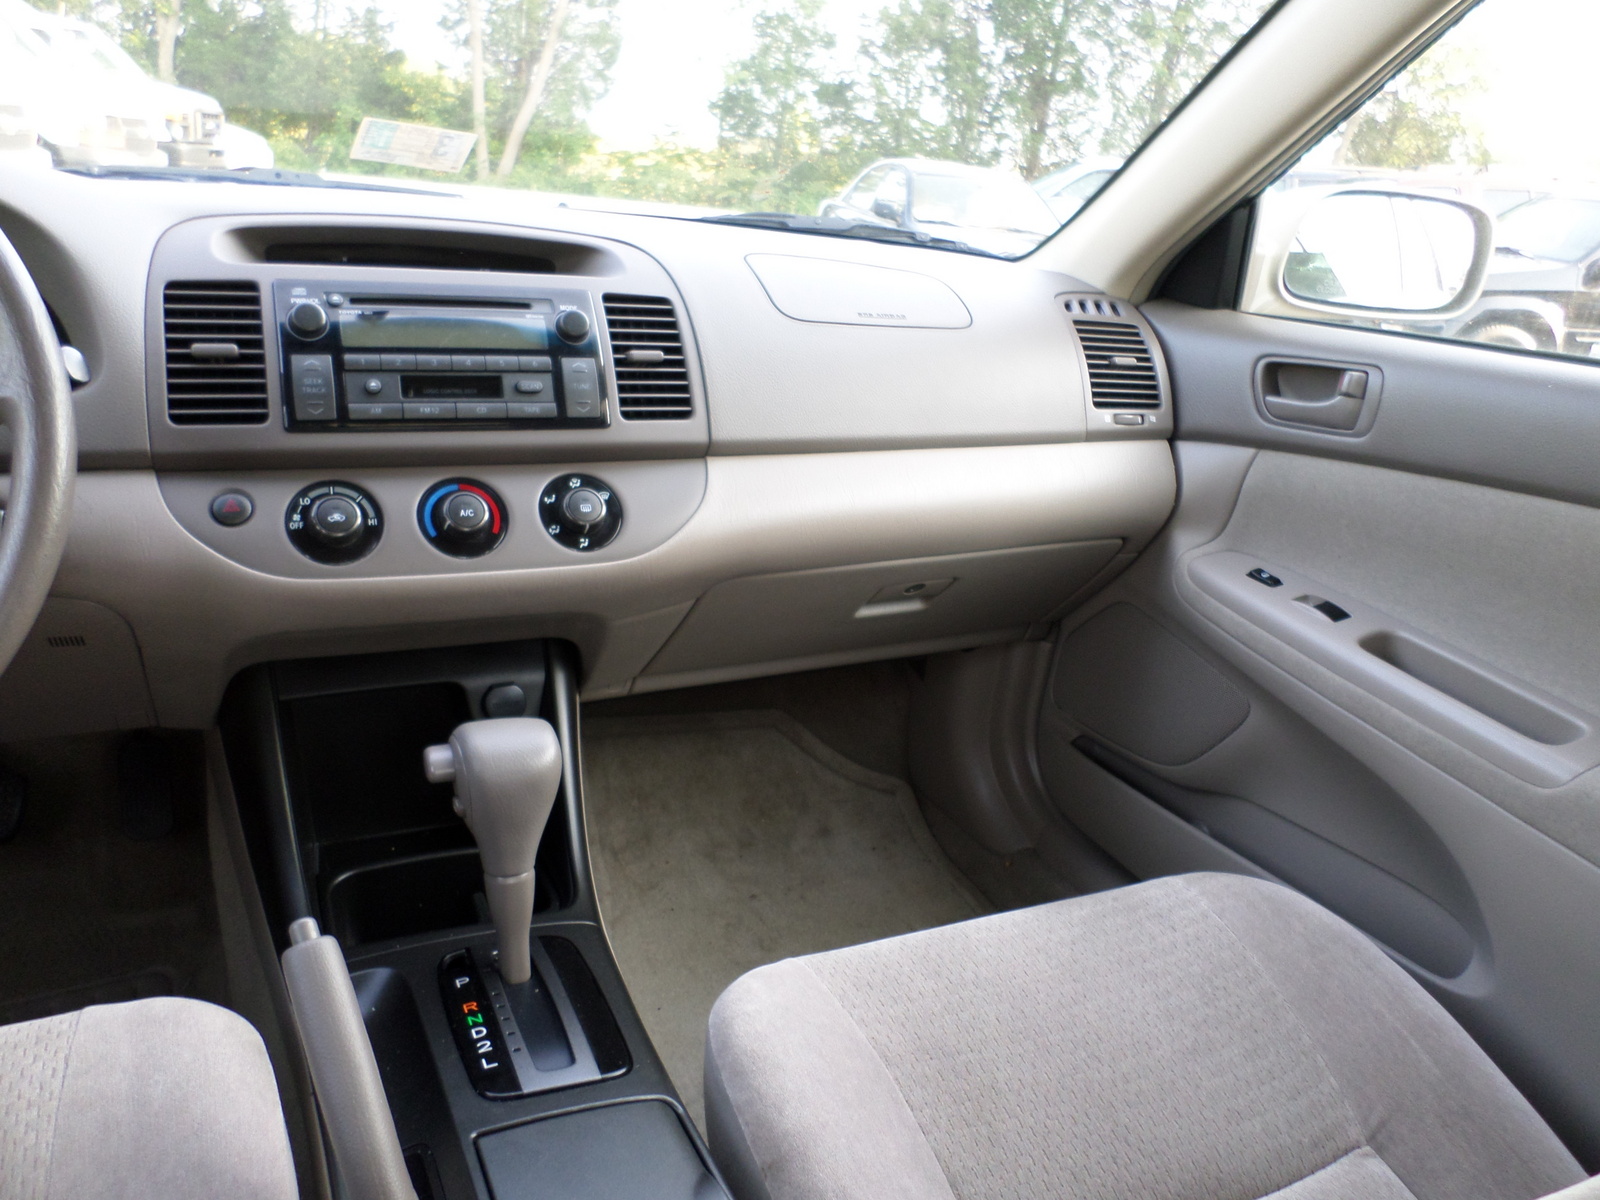 2003 toyota camry interior trim #2